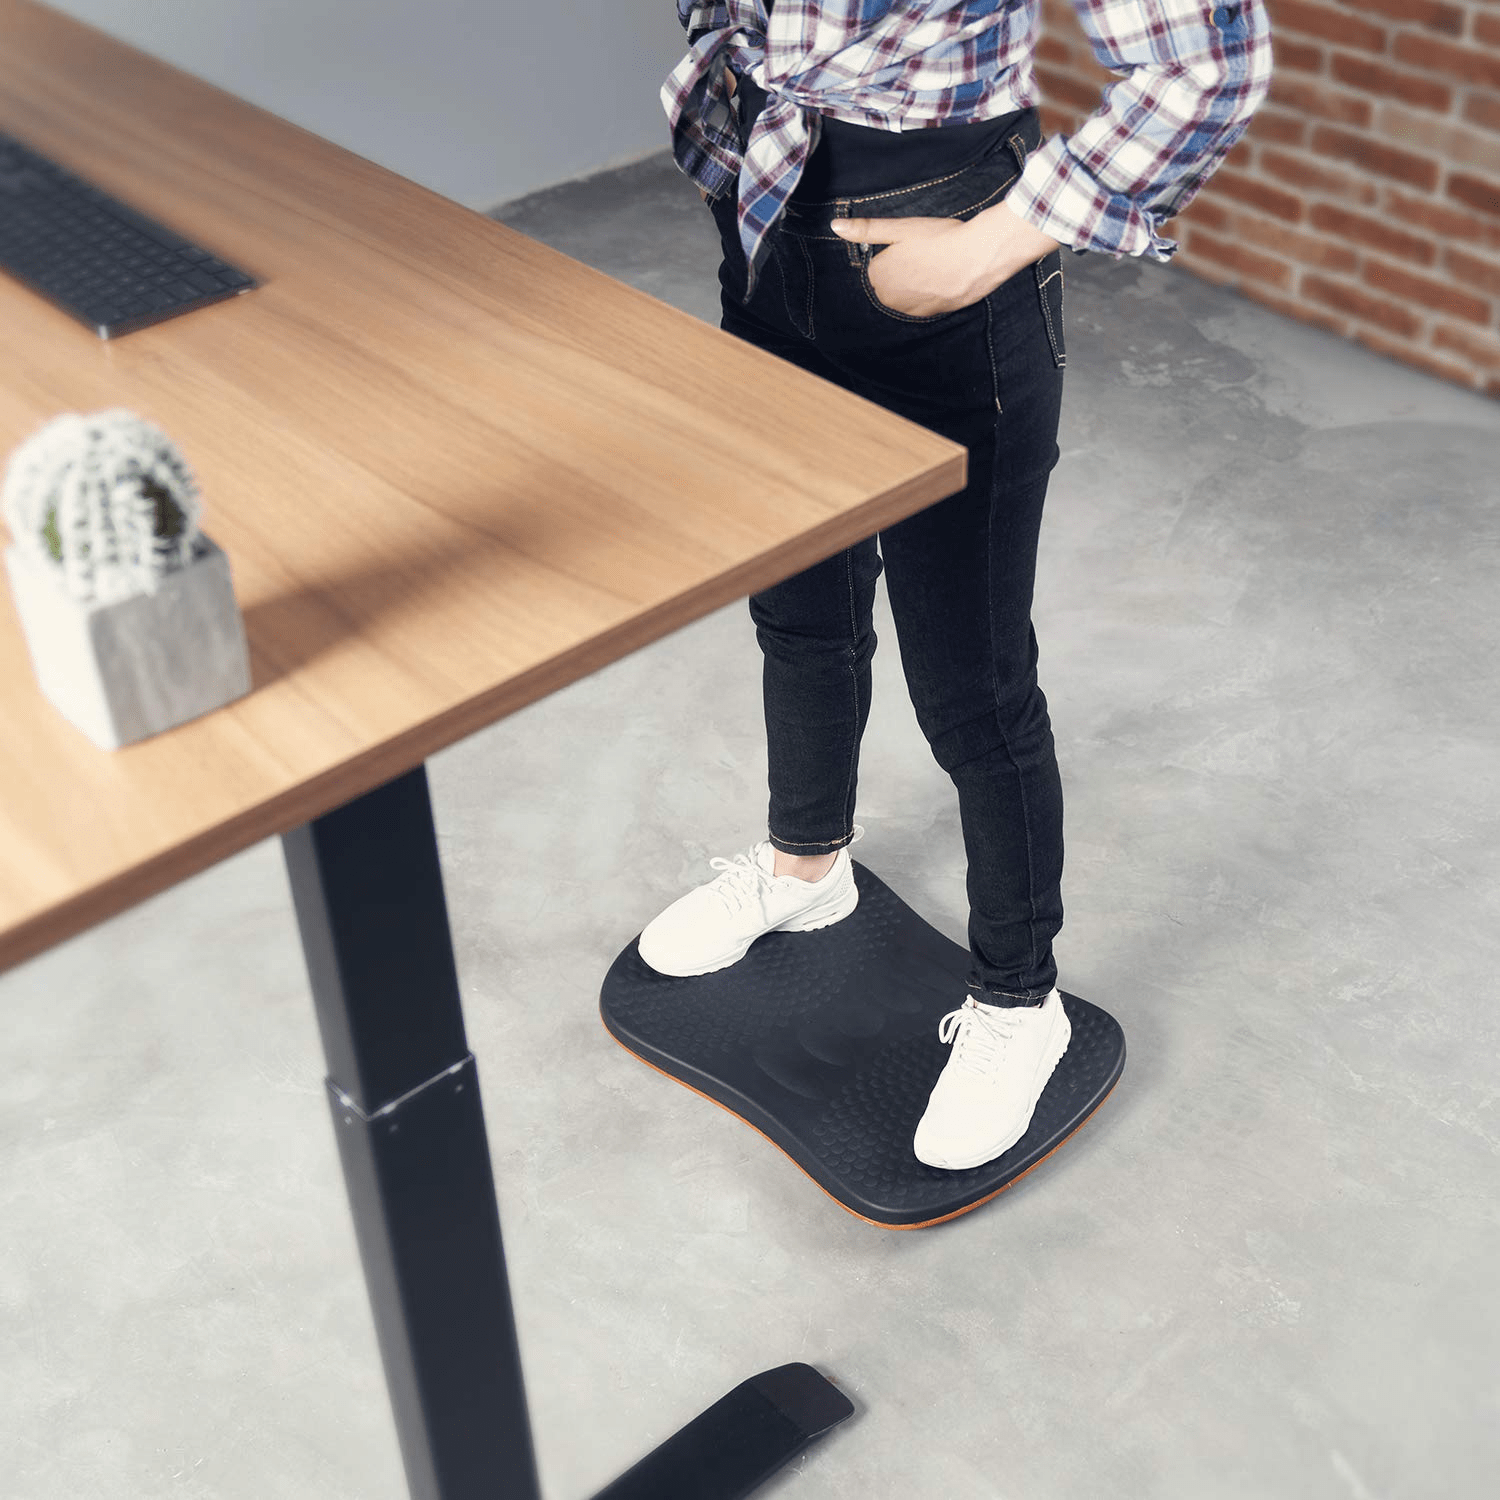 anti fatigue mat standing desk